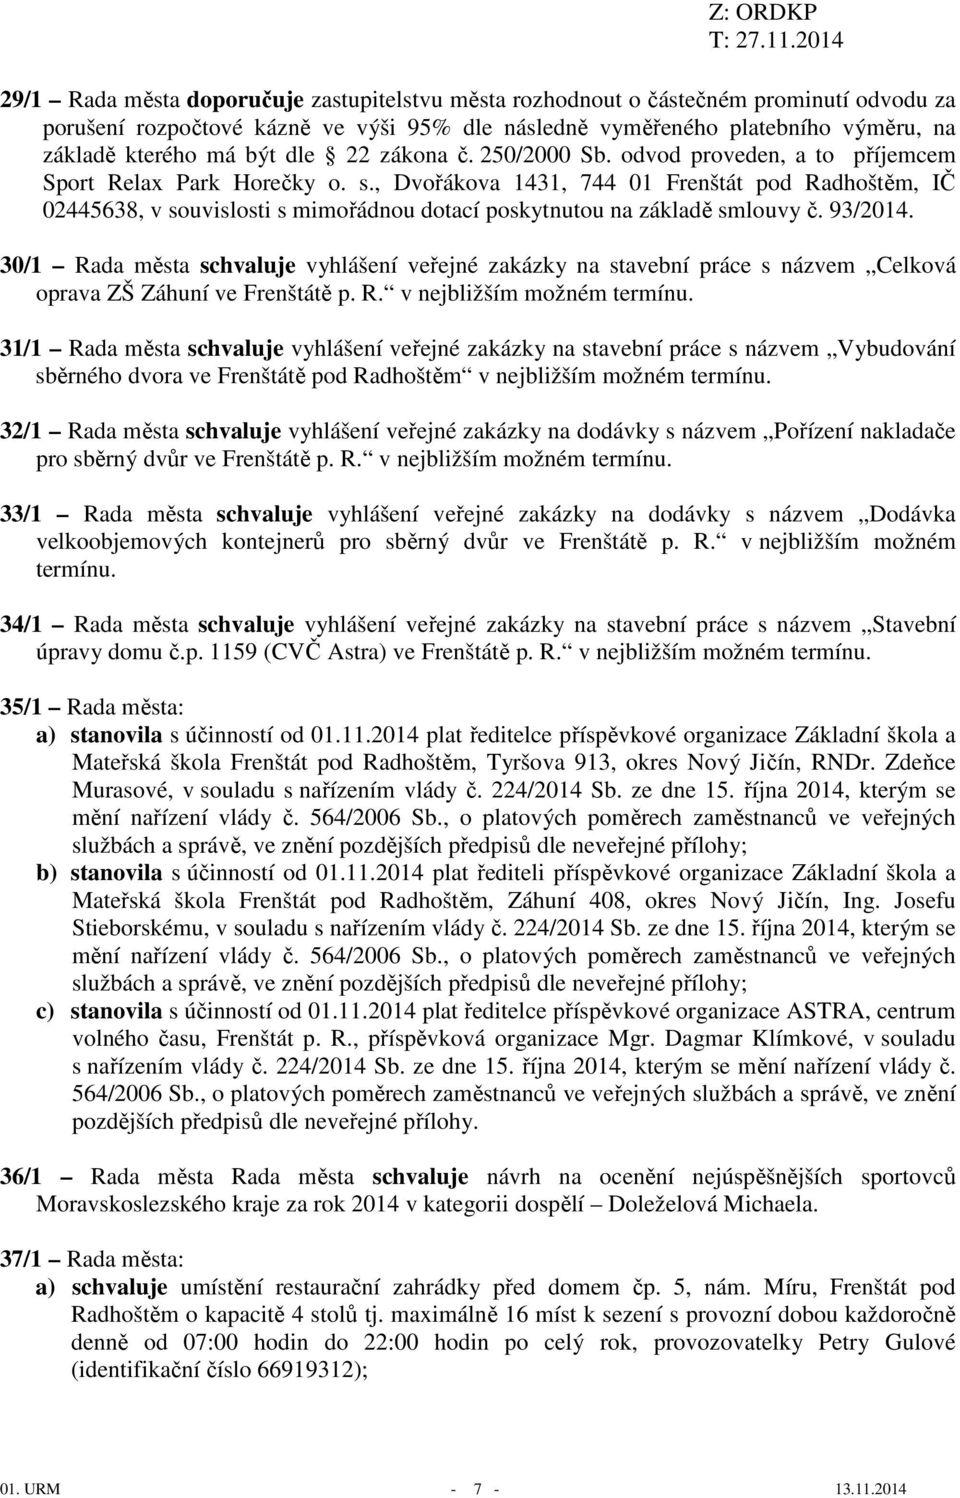 , Dvořákova 1431, 744 01 Frenštát pod Radhoštěm, IČ 02445638, v souvislosti s mimořádnou dotací poskytnutou na základě smlouvy č. 93/2014.